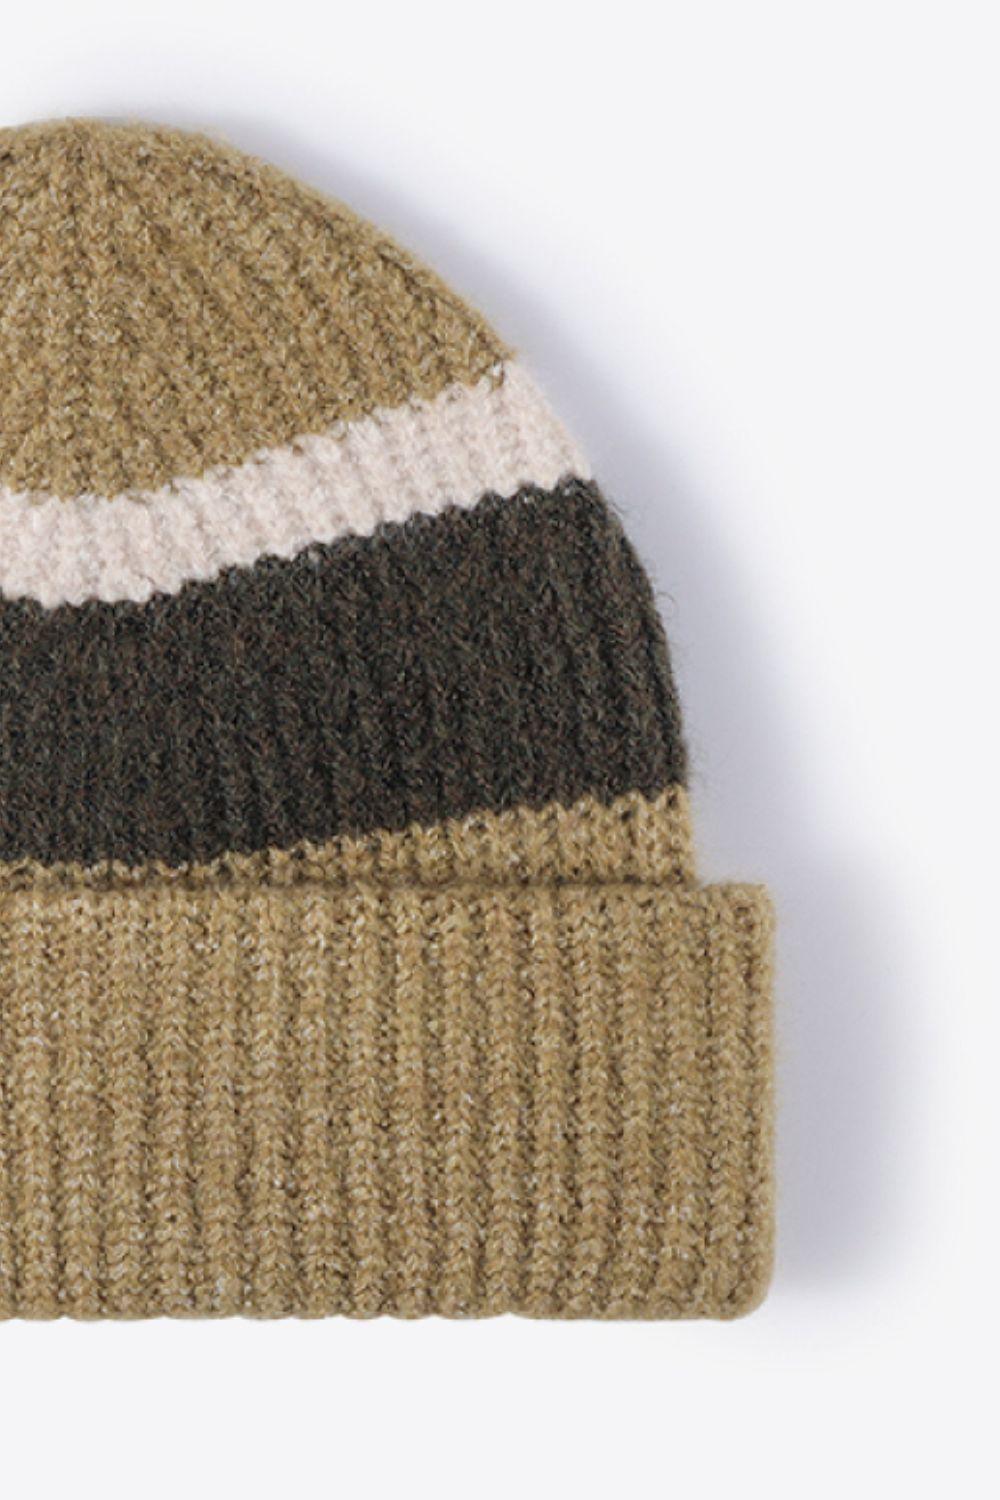 Tricolor Cuffed Knit Beanie - Flyclothing LLC